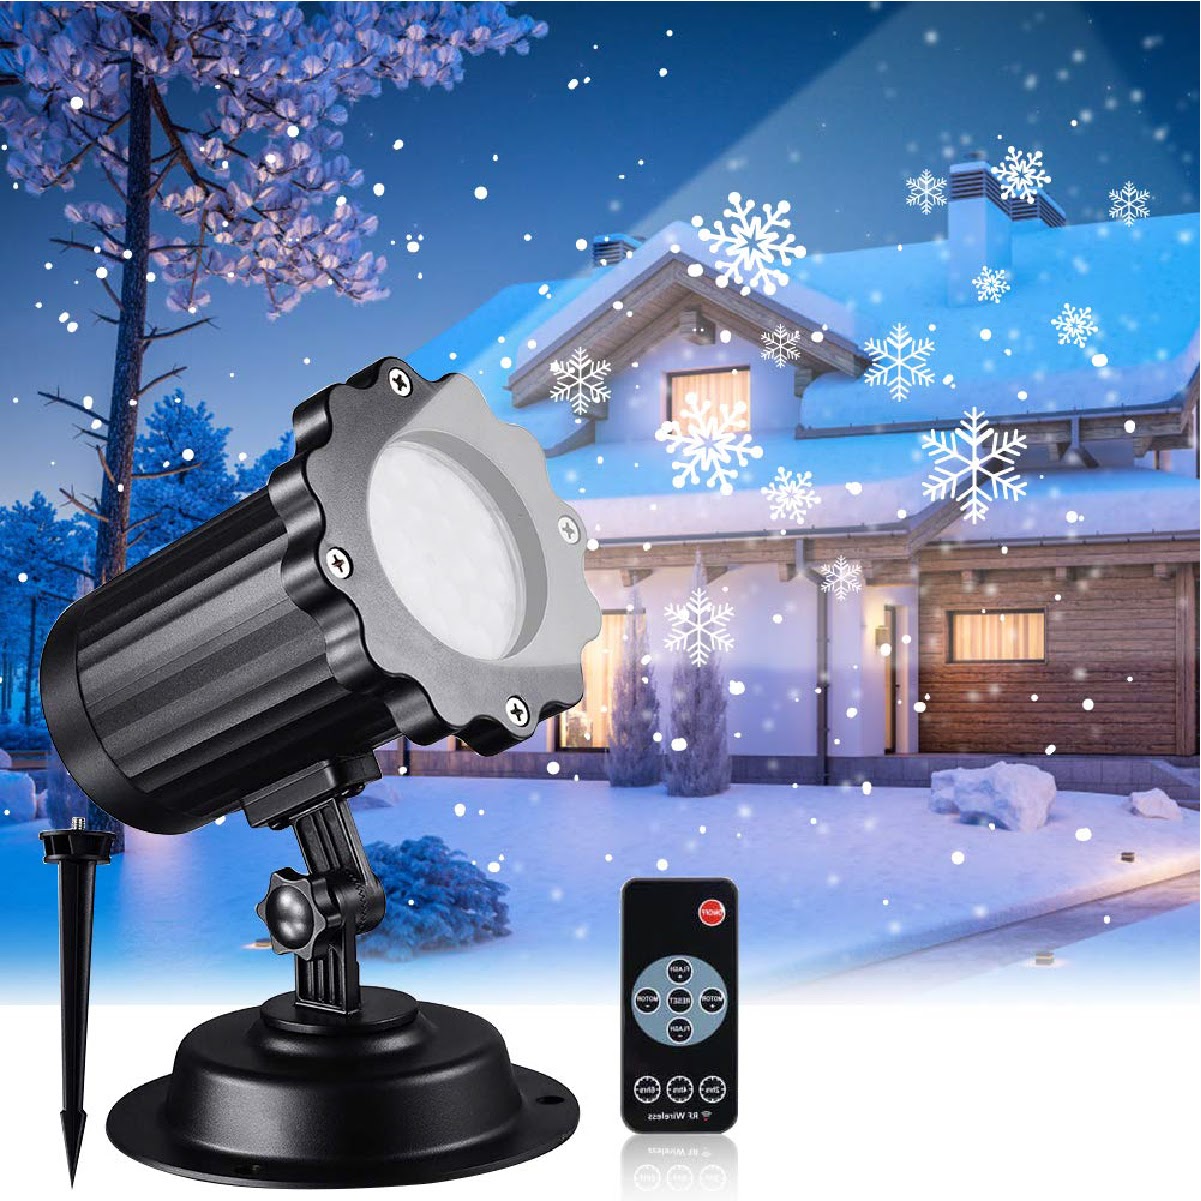 Trend24 – Kerst projector met figuren – LED laser projector met sneeuwvlokken – Kerstprojector – Sneeuw projector – Kerstverlichting voor binnen en buiten – Inclusief afstandsbediening